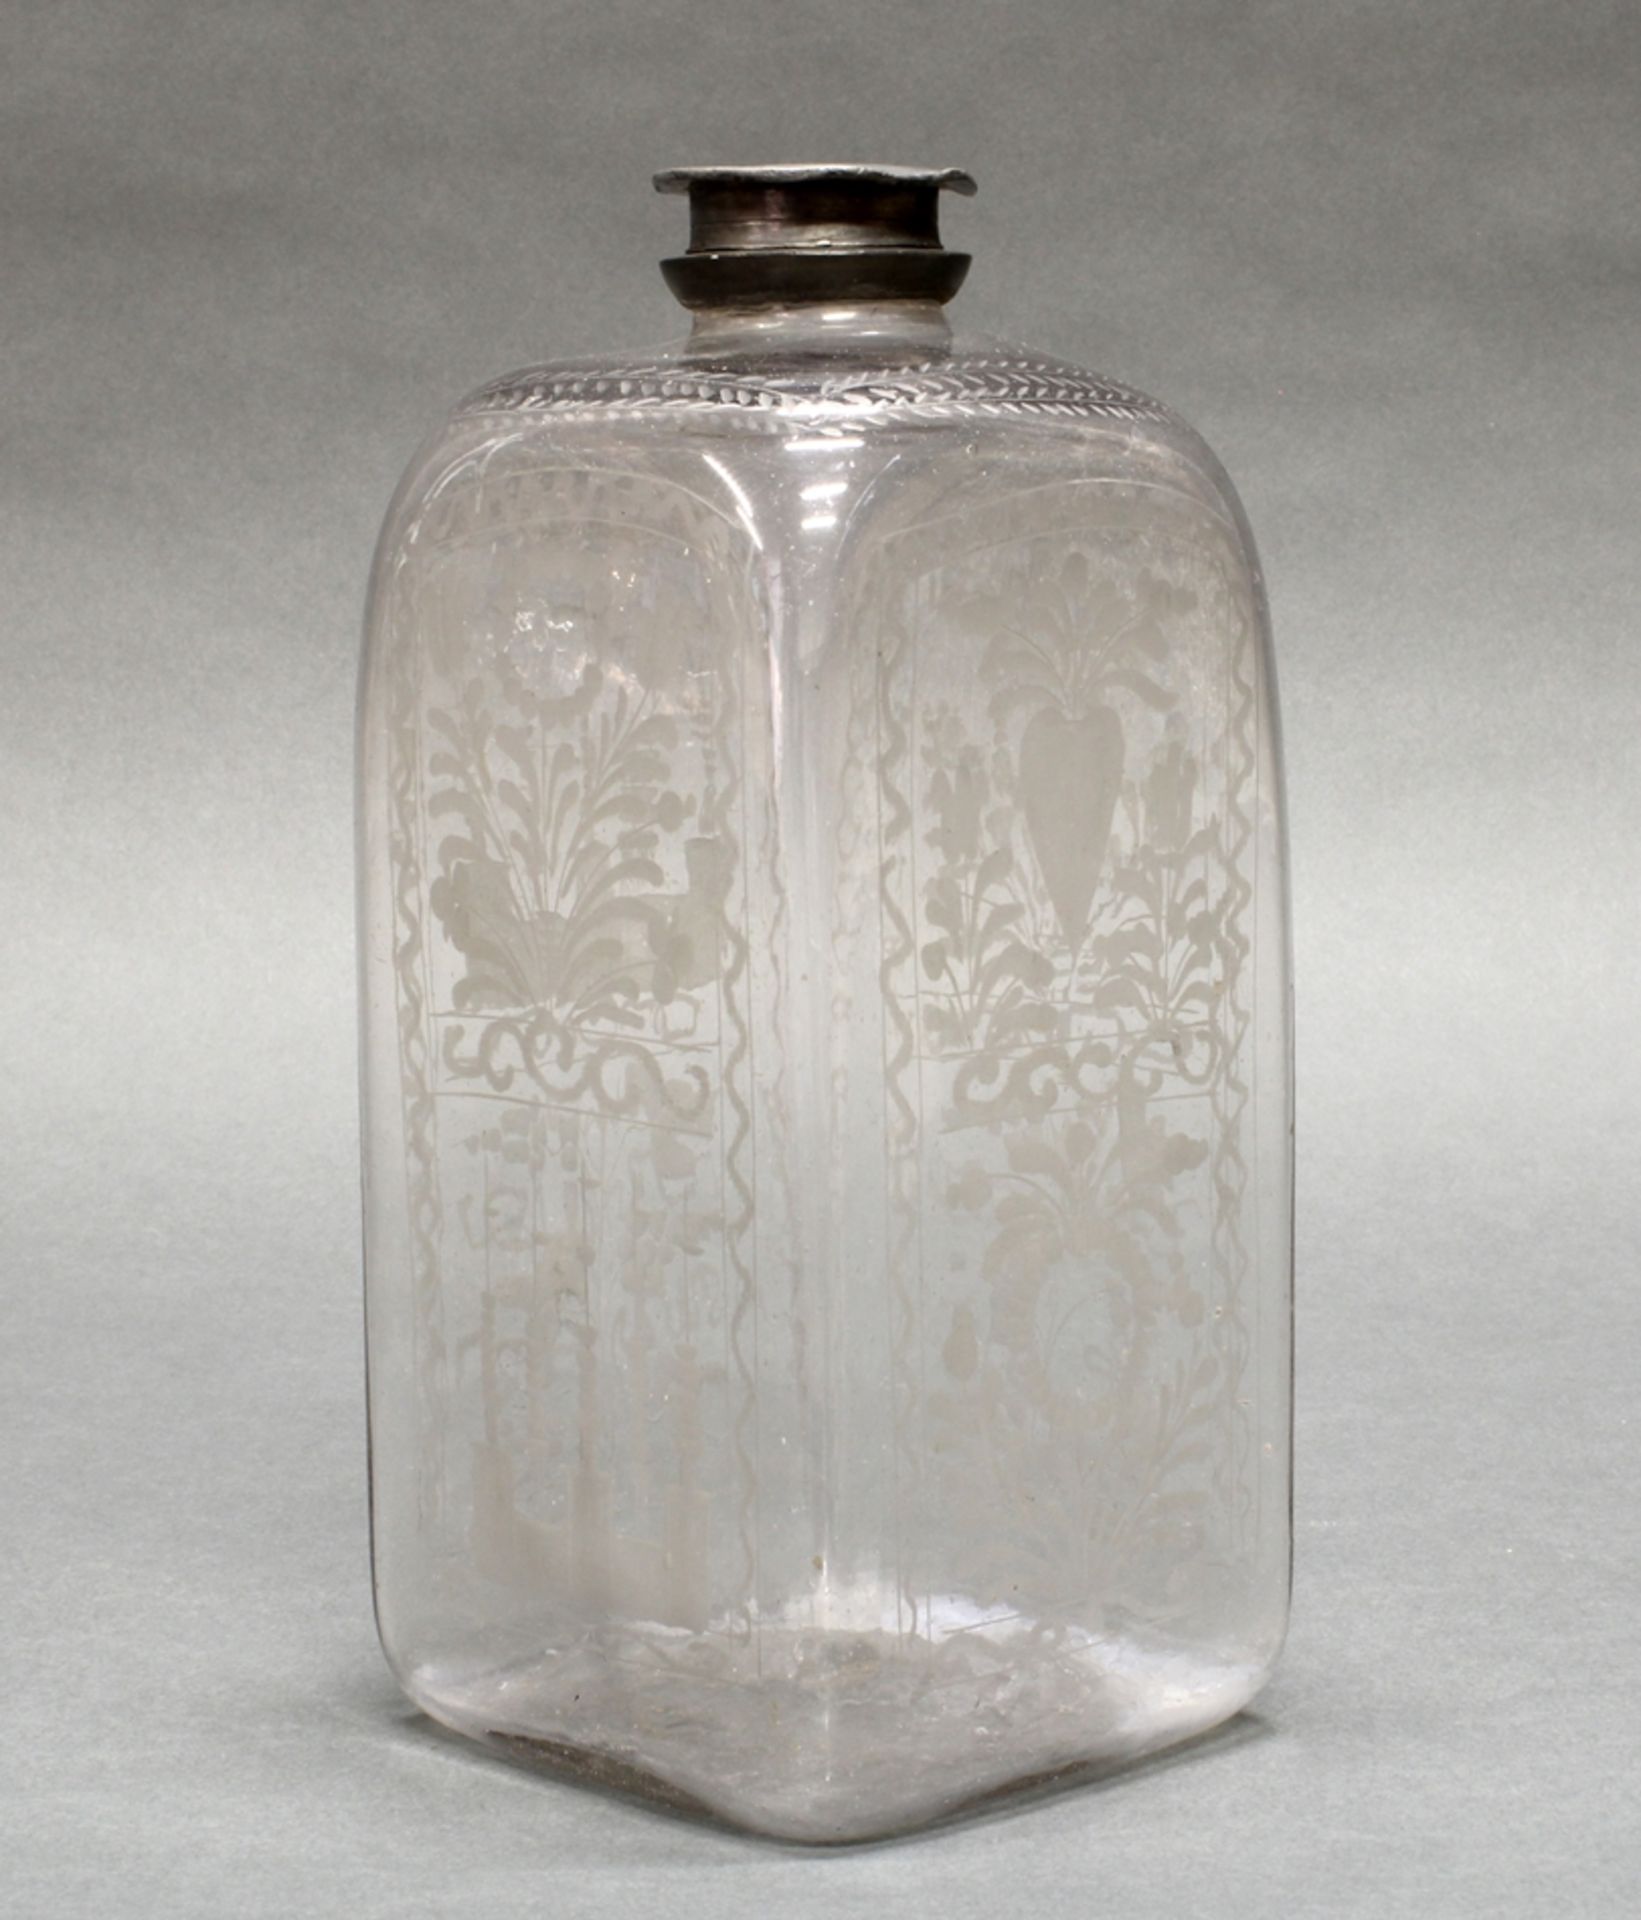 3 Glasflaschen, deutsch, Anfang 19. Jh., farblos, 1x vierseitig, 2x oktogonal, geschnittene Blüten- - Image 3 of 4